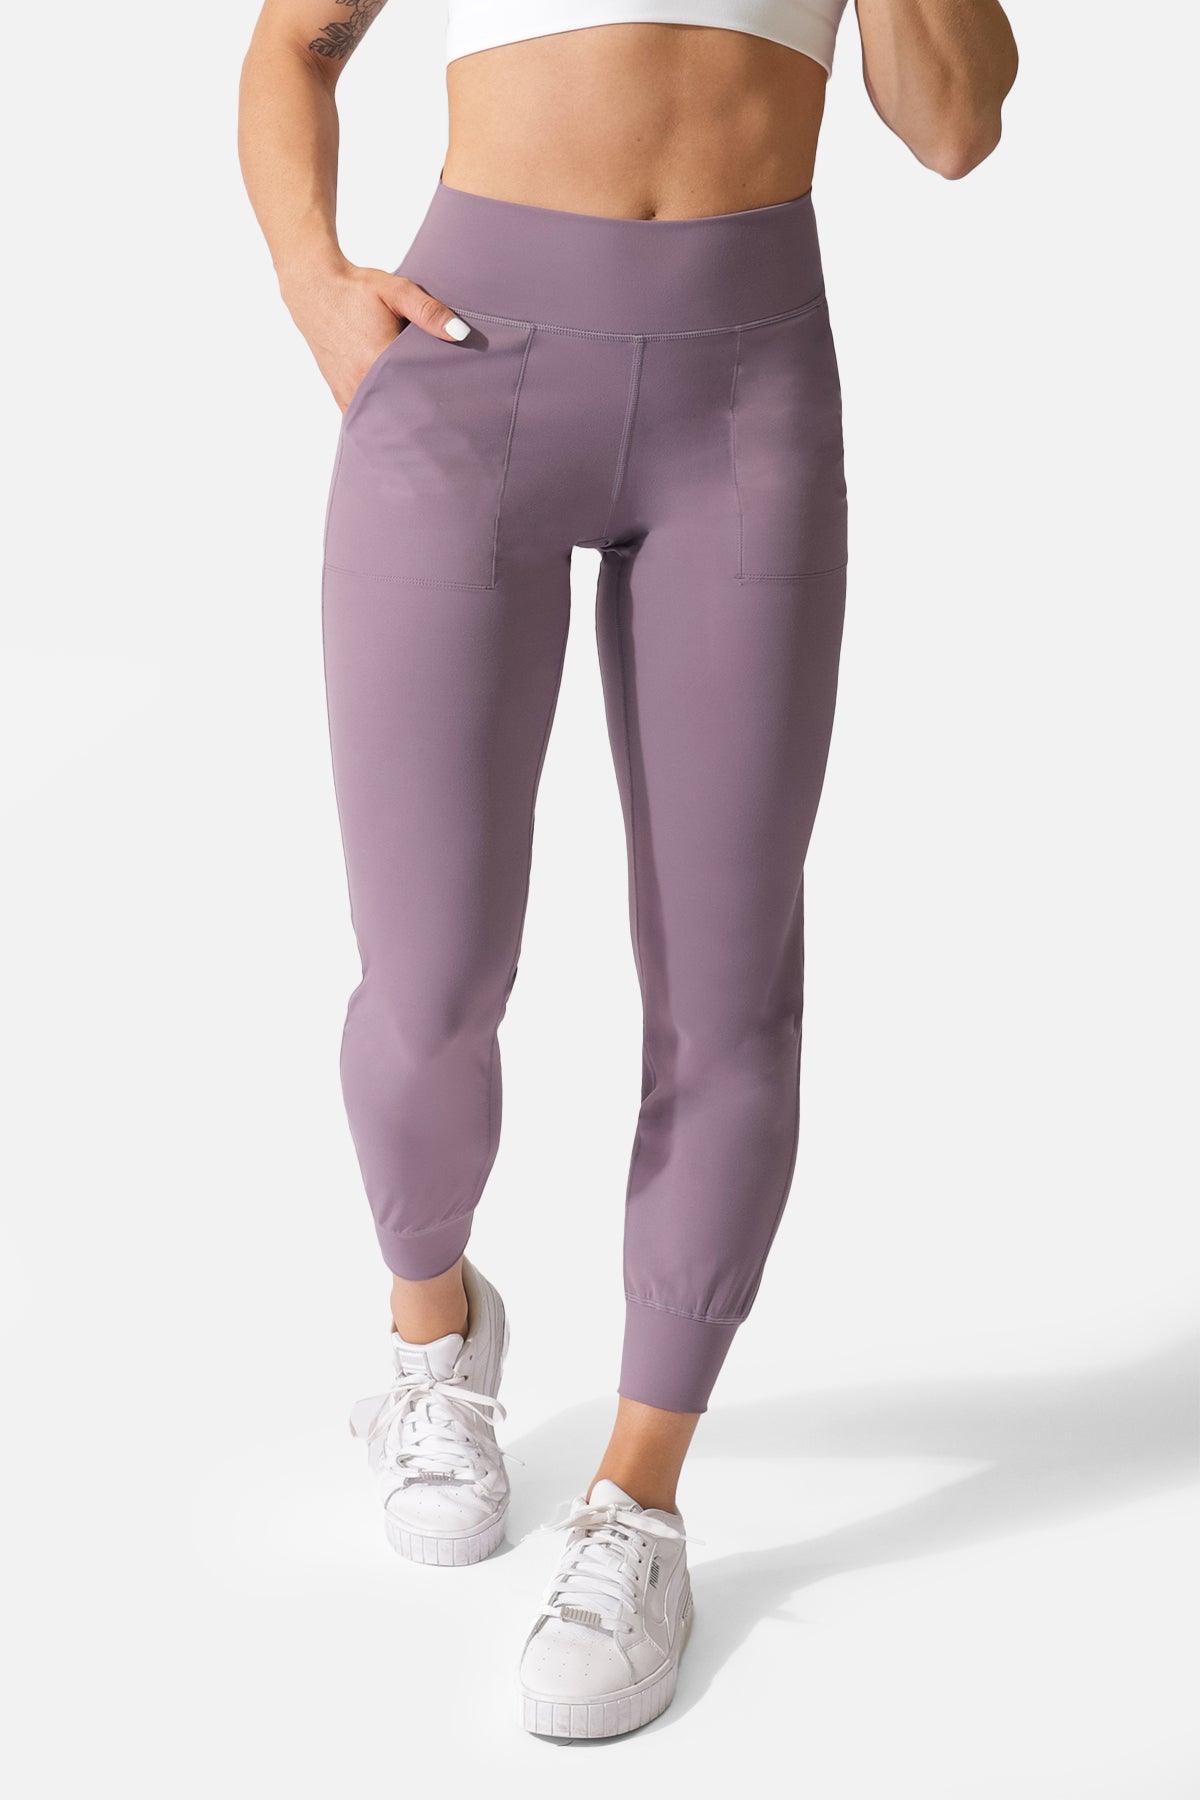  Womens Joggers High Waist Yoga Pockets Sweatpants Sport Workout  Pants Vintage Violet Purple M